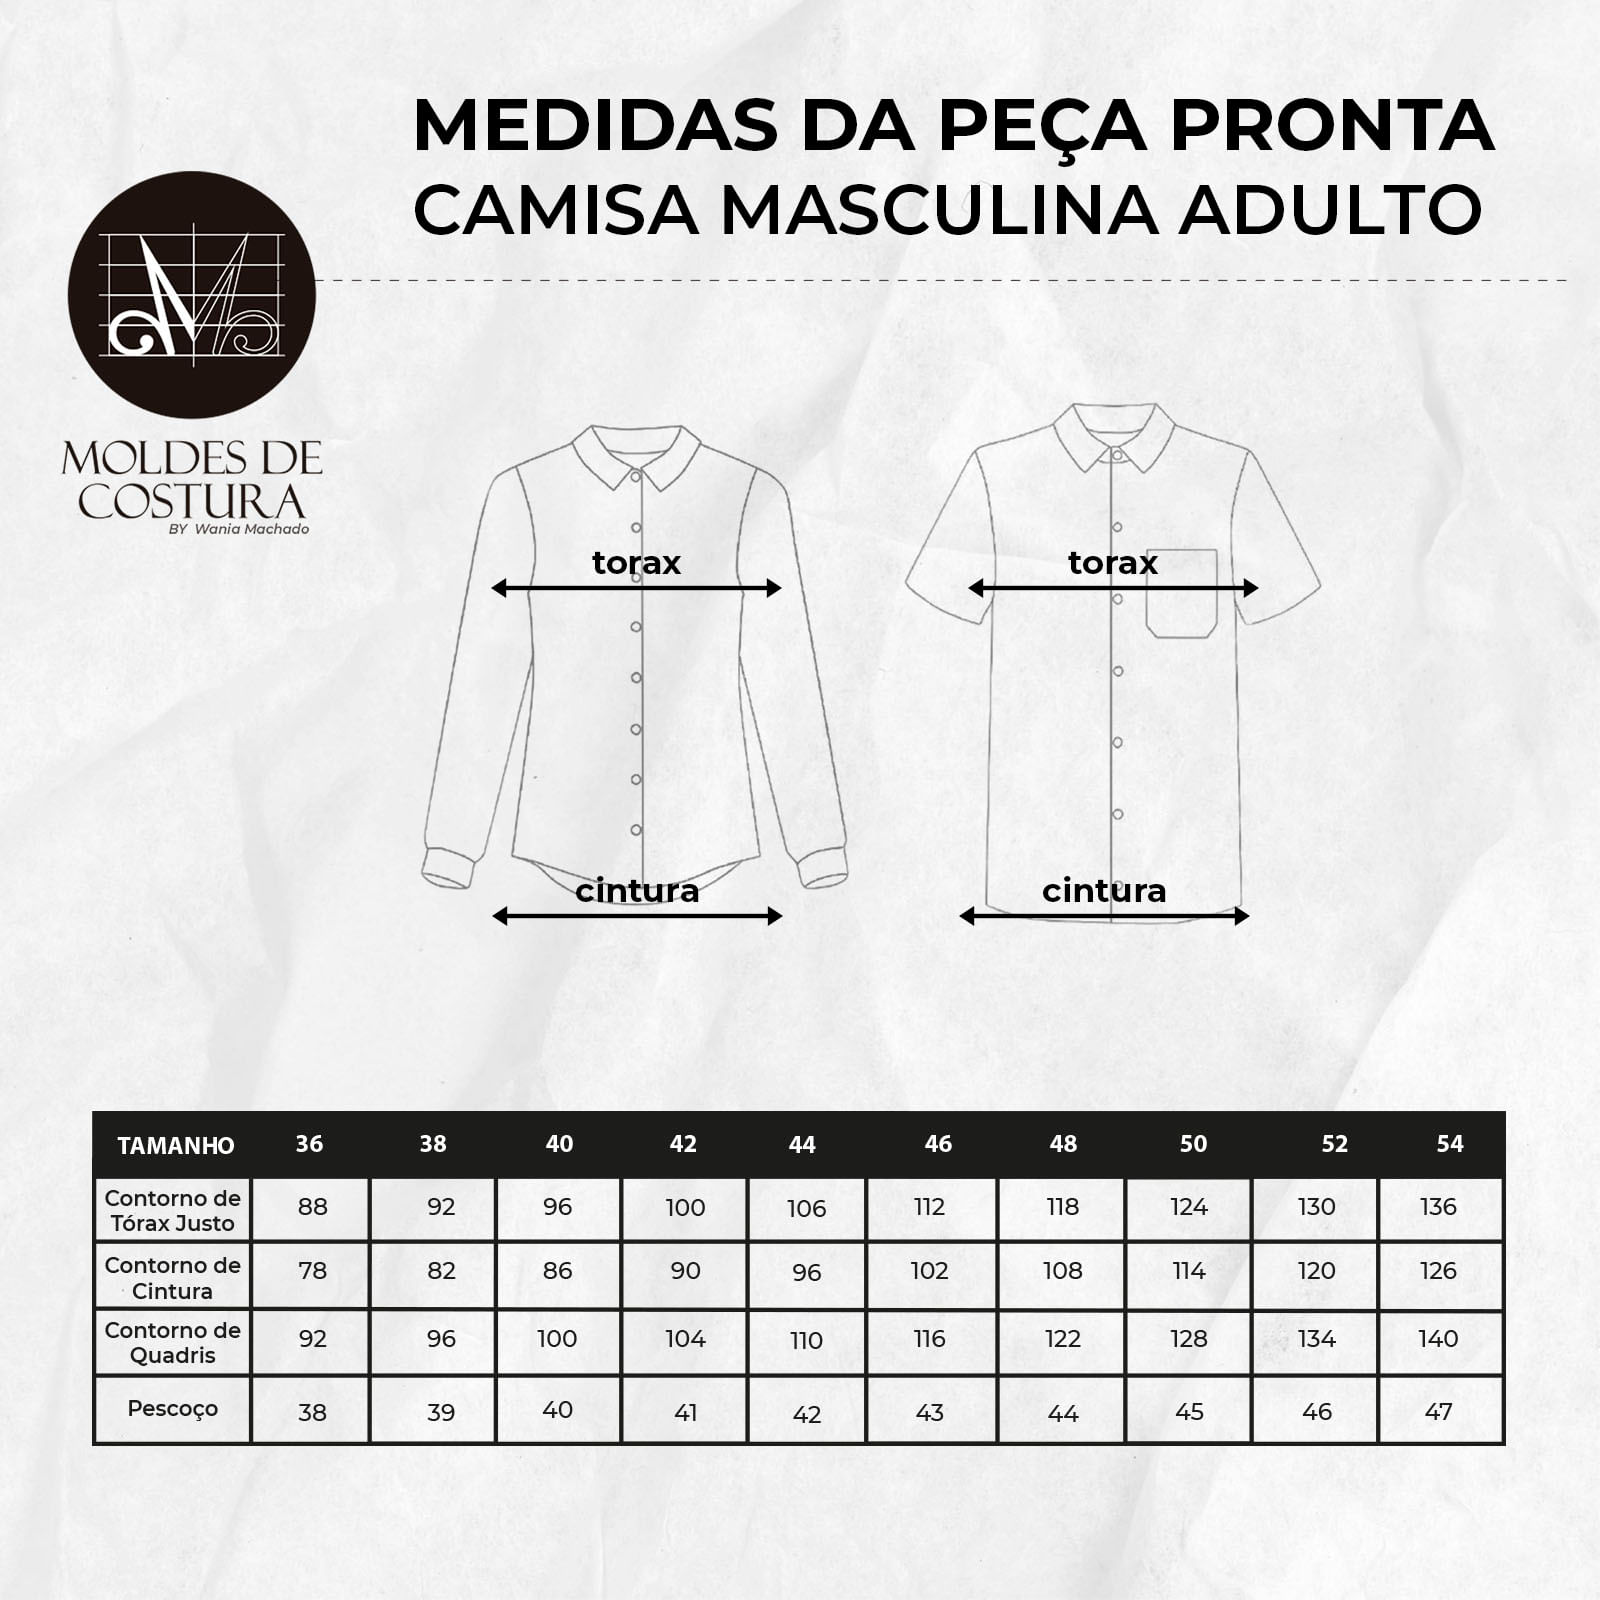 Molde camisa masculina adulto tamanho 36 ao 44 by Wania Machado